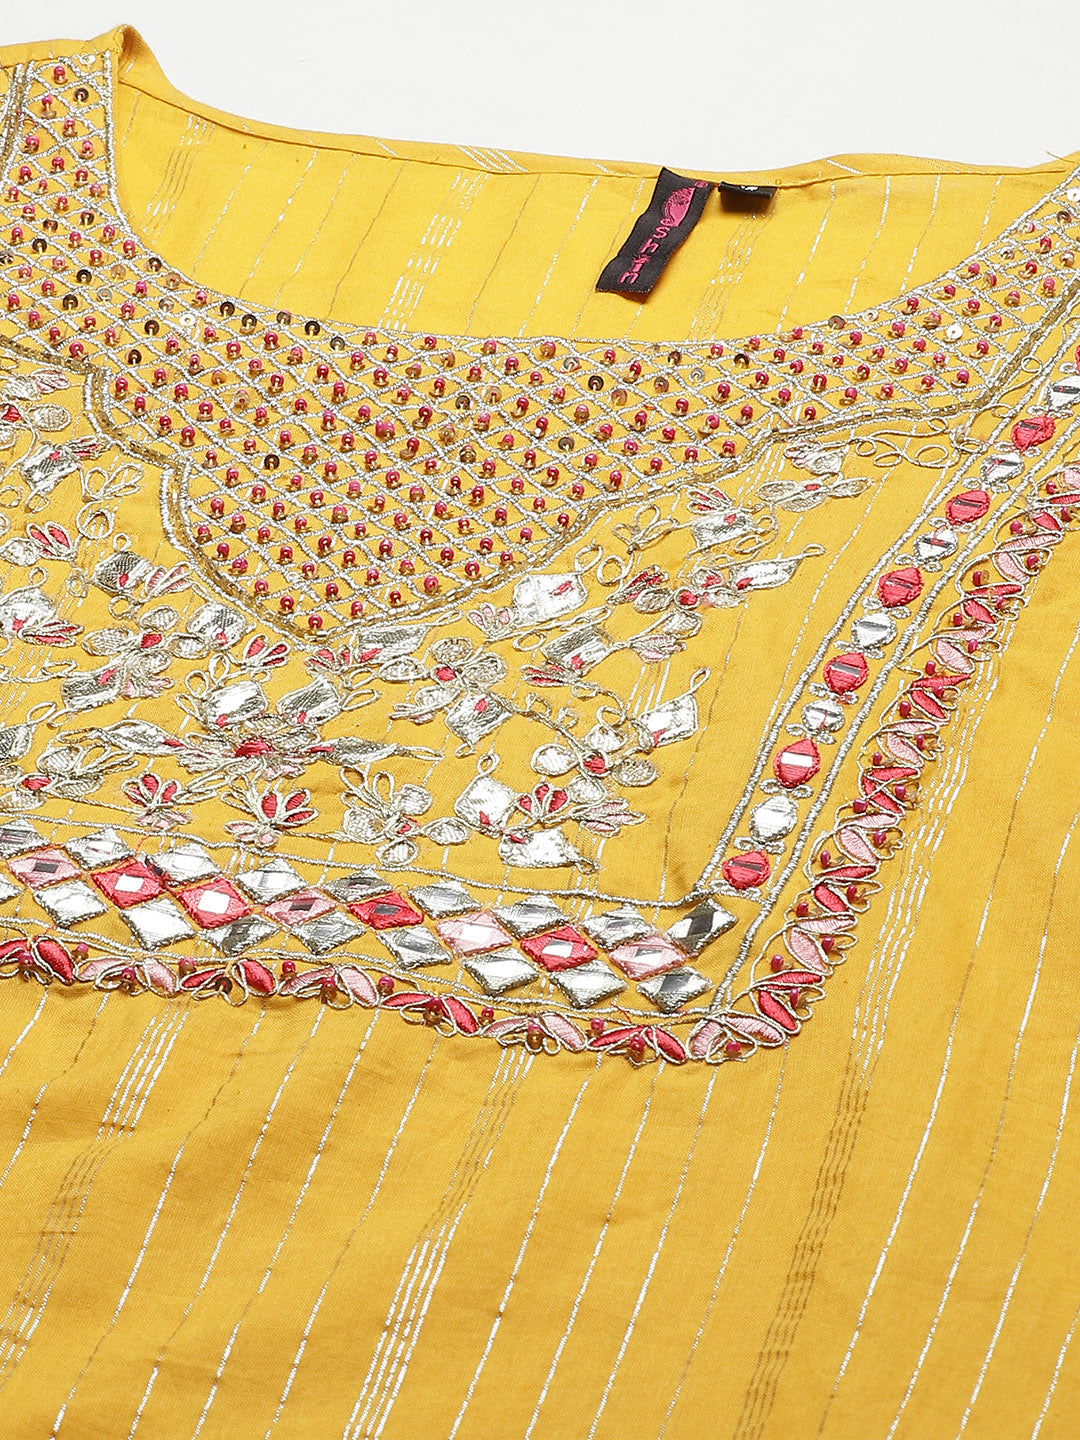 Women's Cotton Blend Mustard Embroidered A-Line Kurta Sharara Dupatta Set - Navyaa